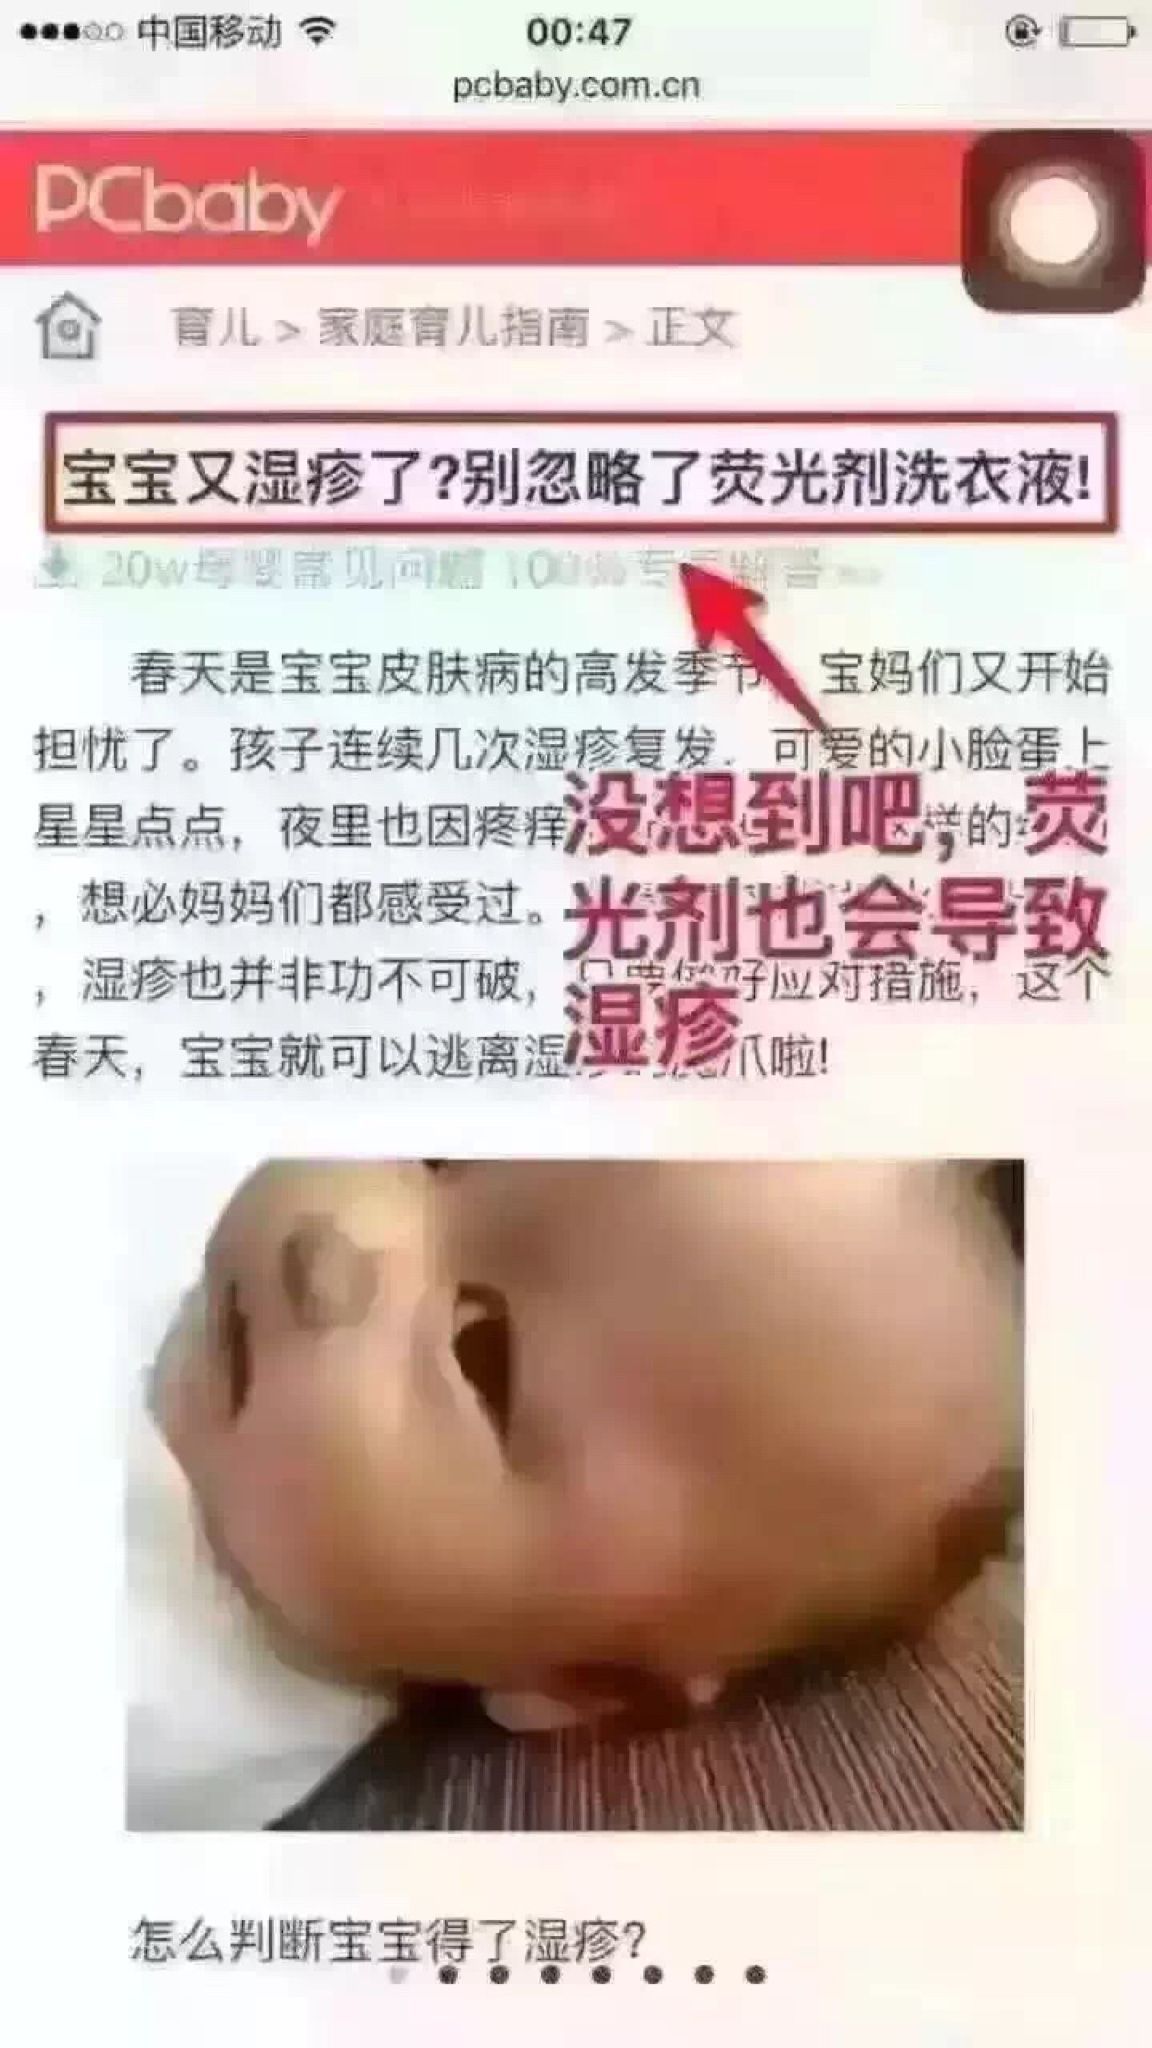 宝宝的湿疹是有荧光剂造成的